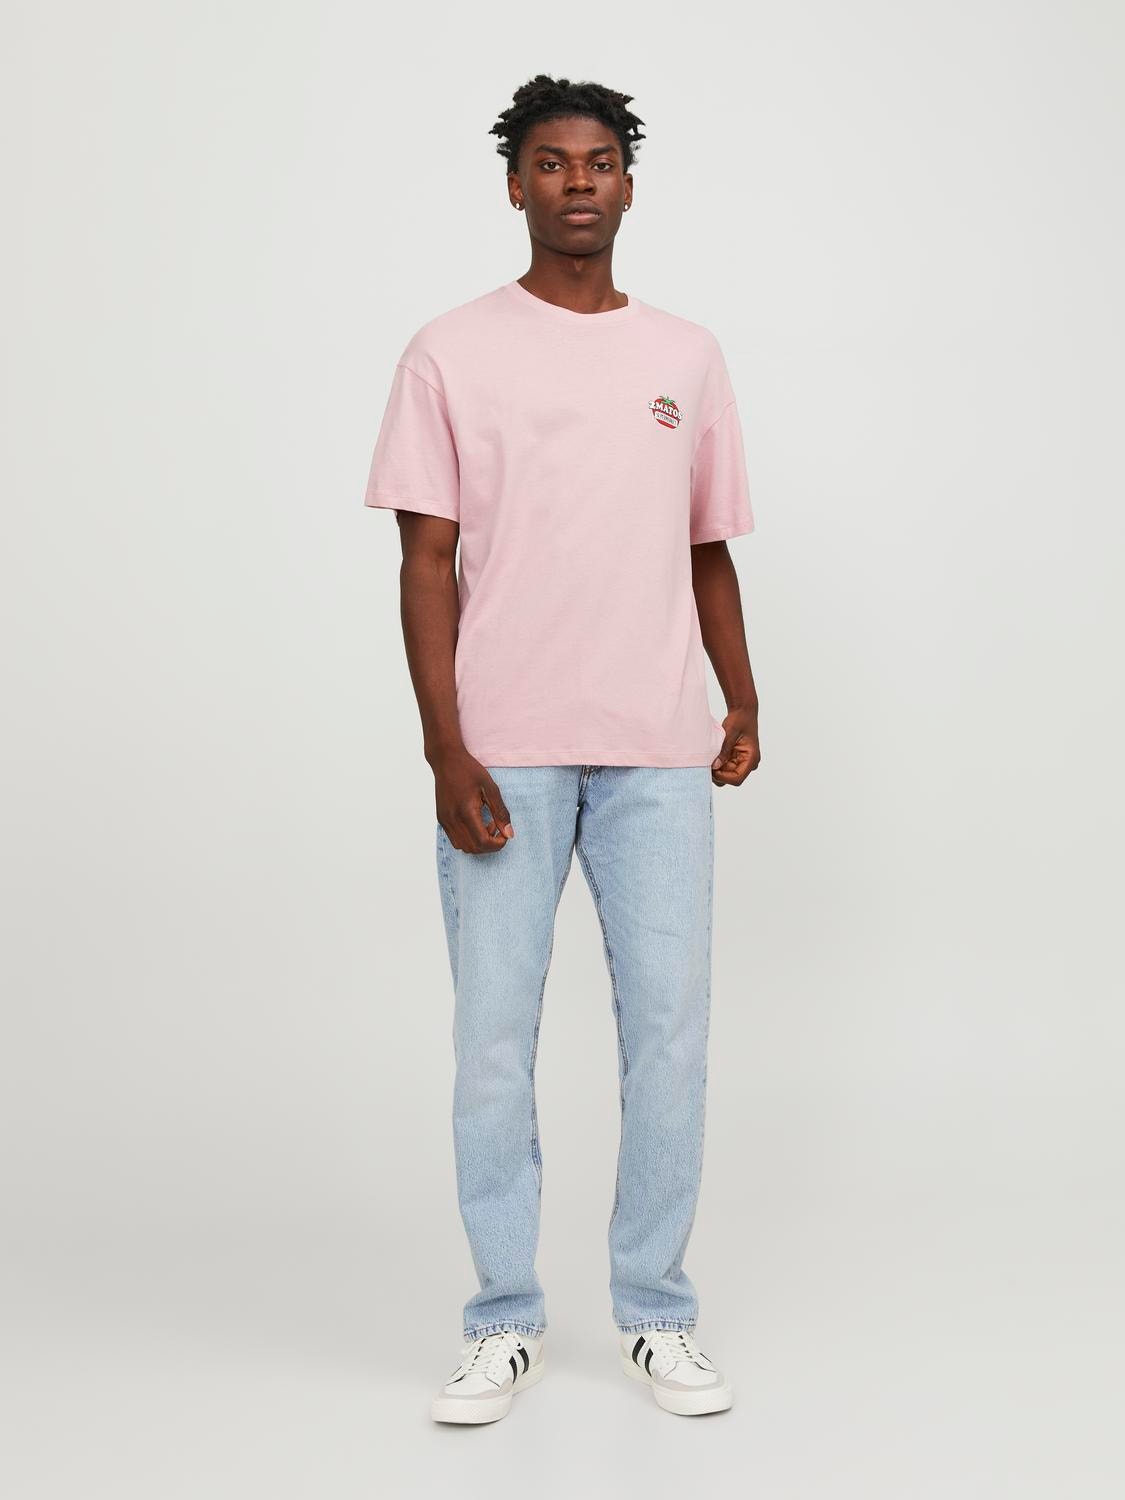 Jack & Jones Gedruckt Rundhals T-shirt -Pink Nectar - 12247753